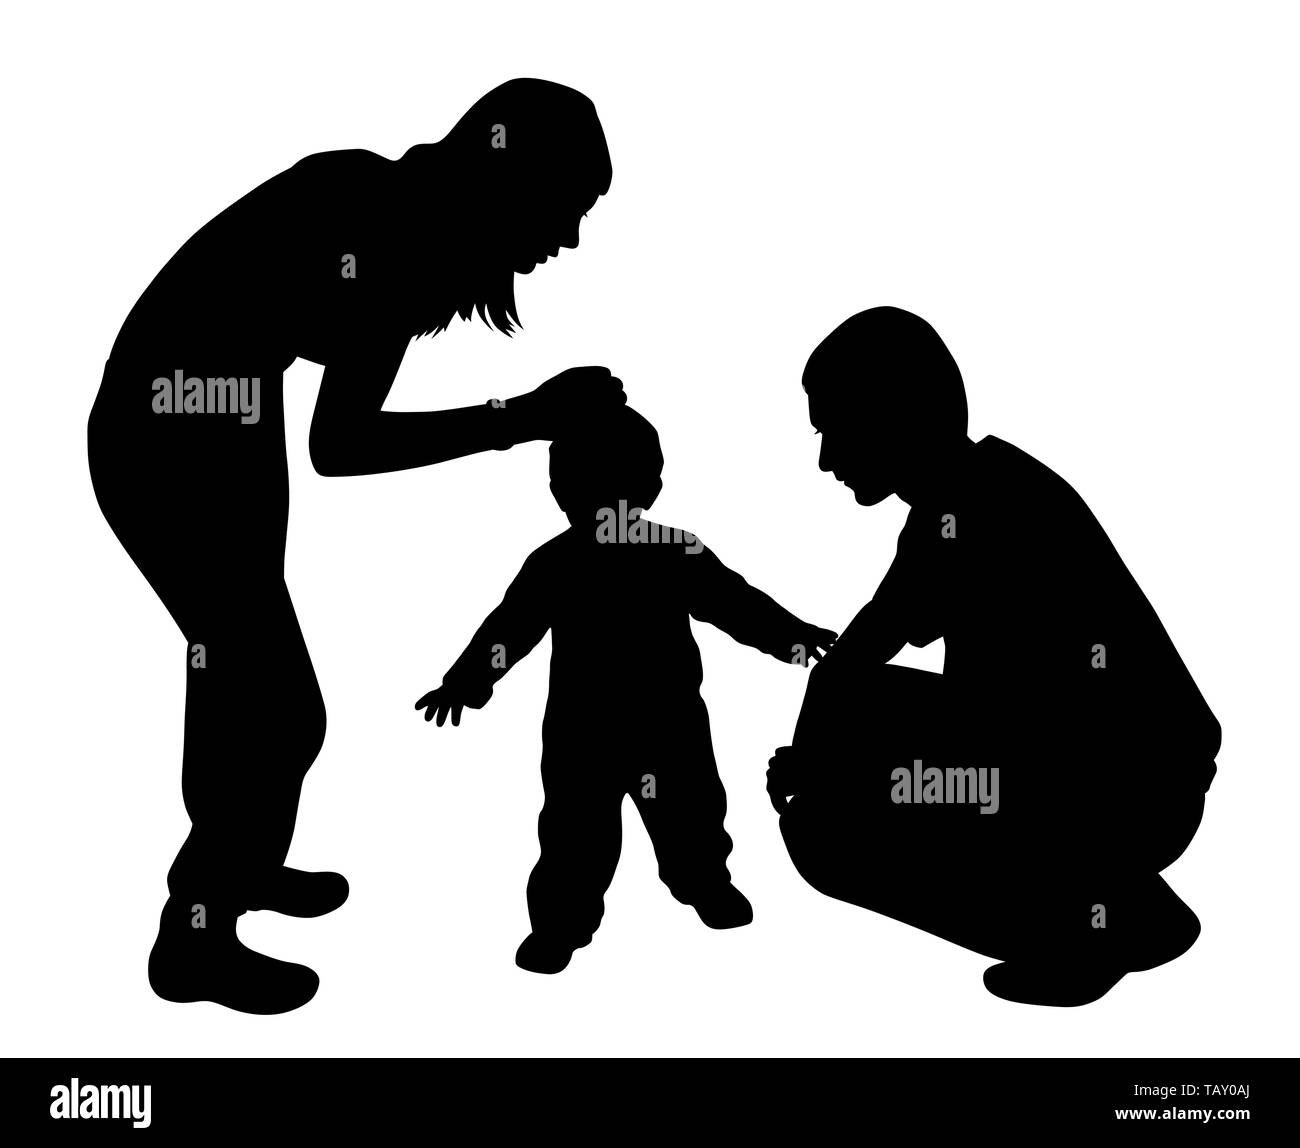 Liebevolle Mutter und Vater mit Kind. Mutter streichelt Kind während Vater mit Mutter und Kind zusammen. Zuneigung Zusammengehörigkeit Konzept. Stock Vektor